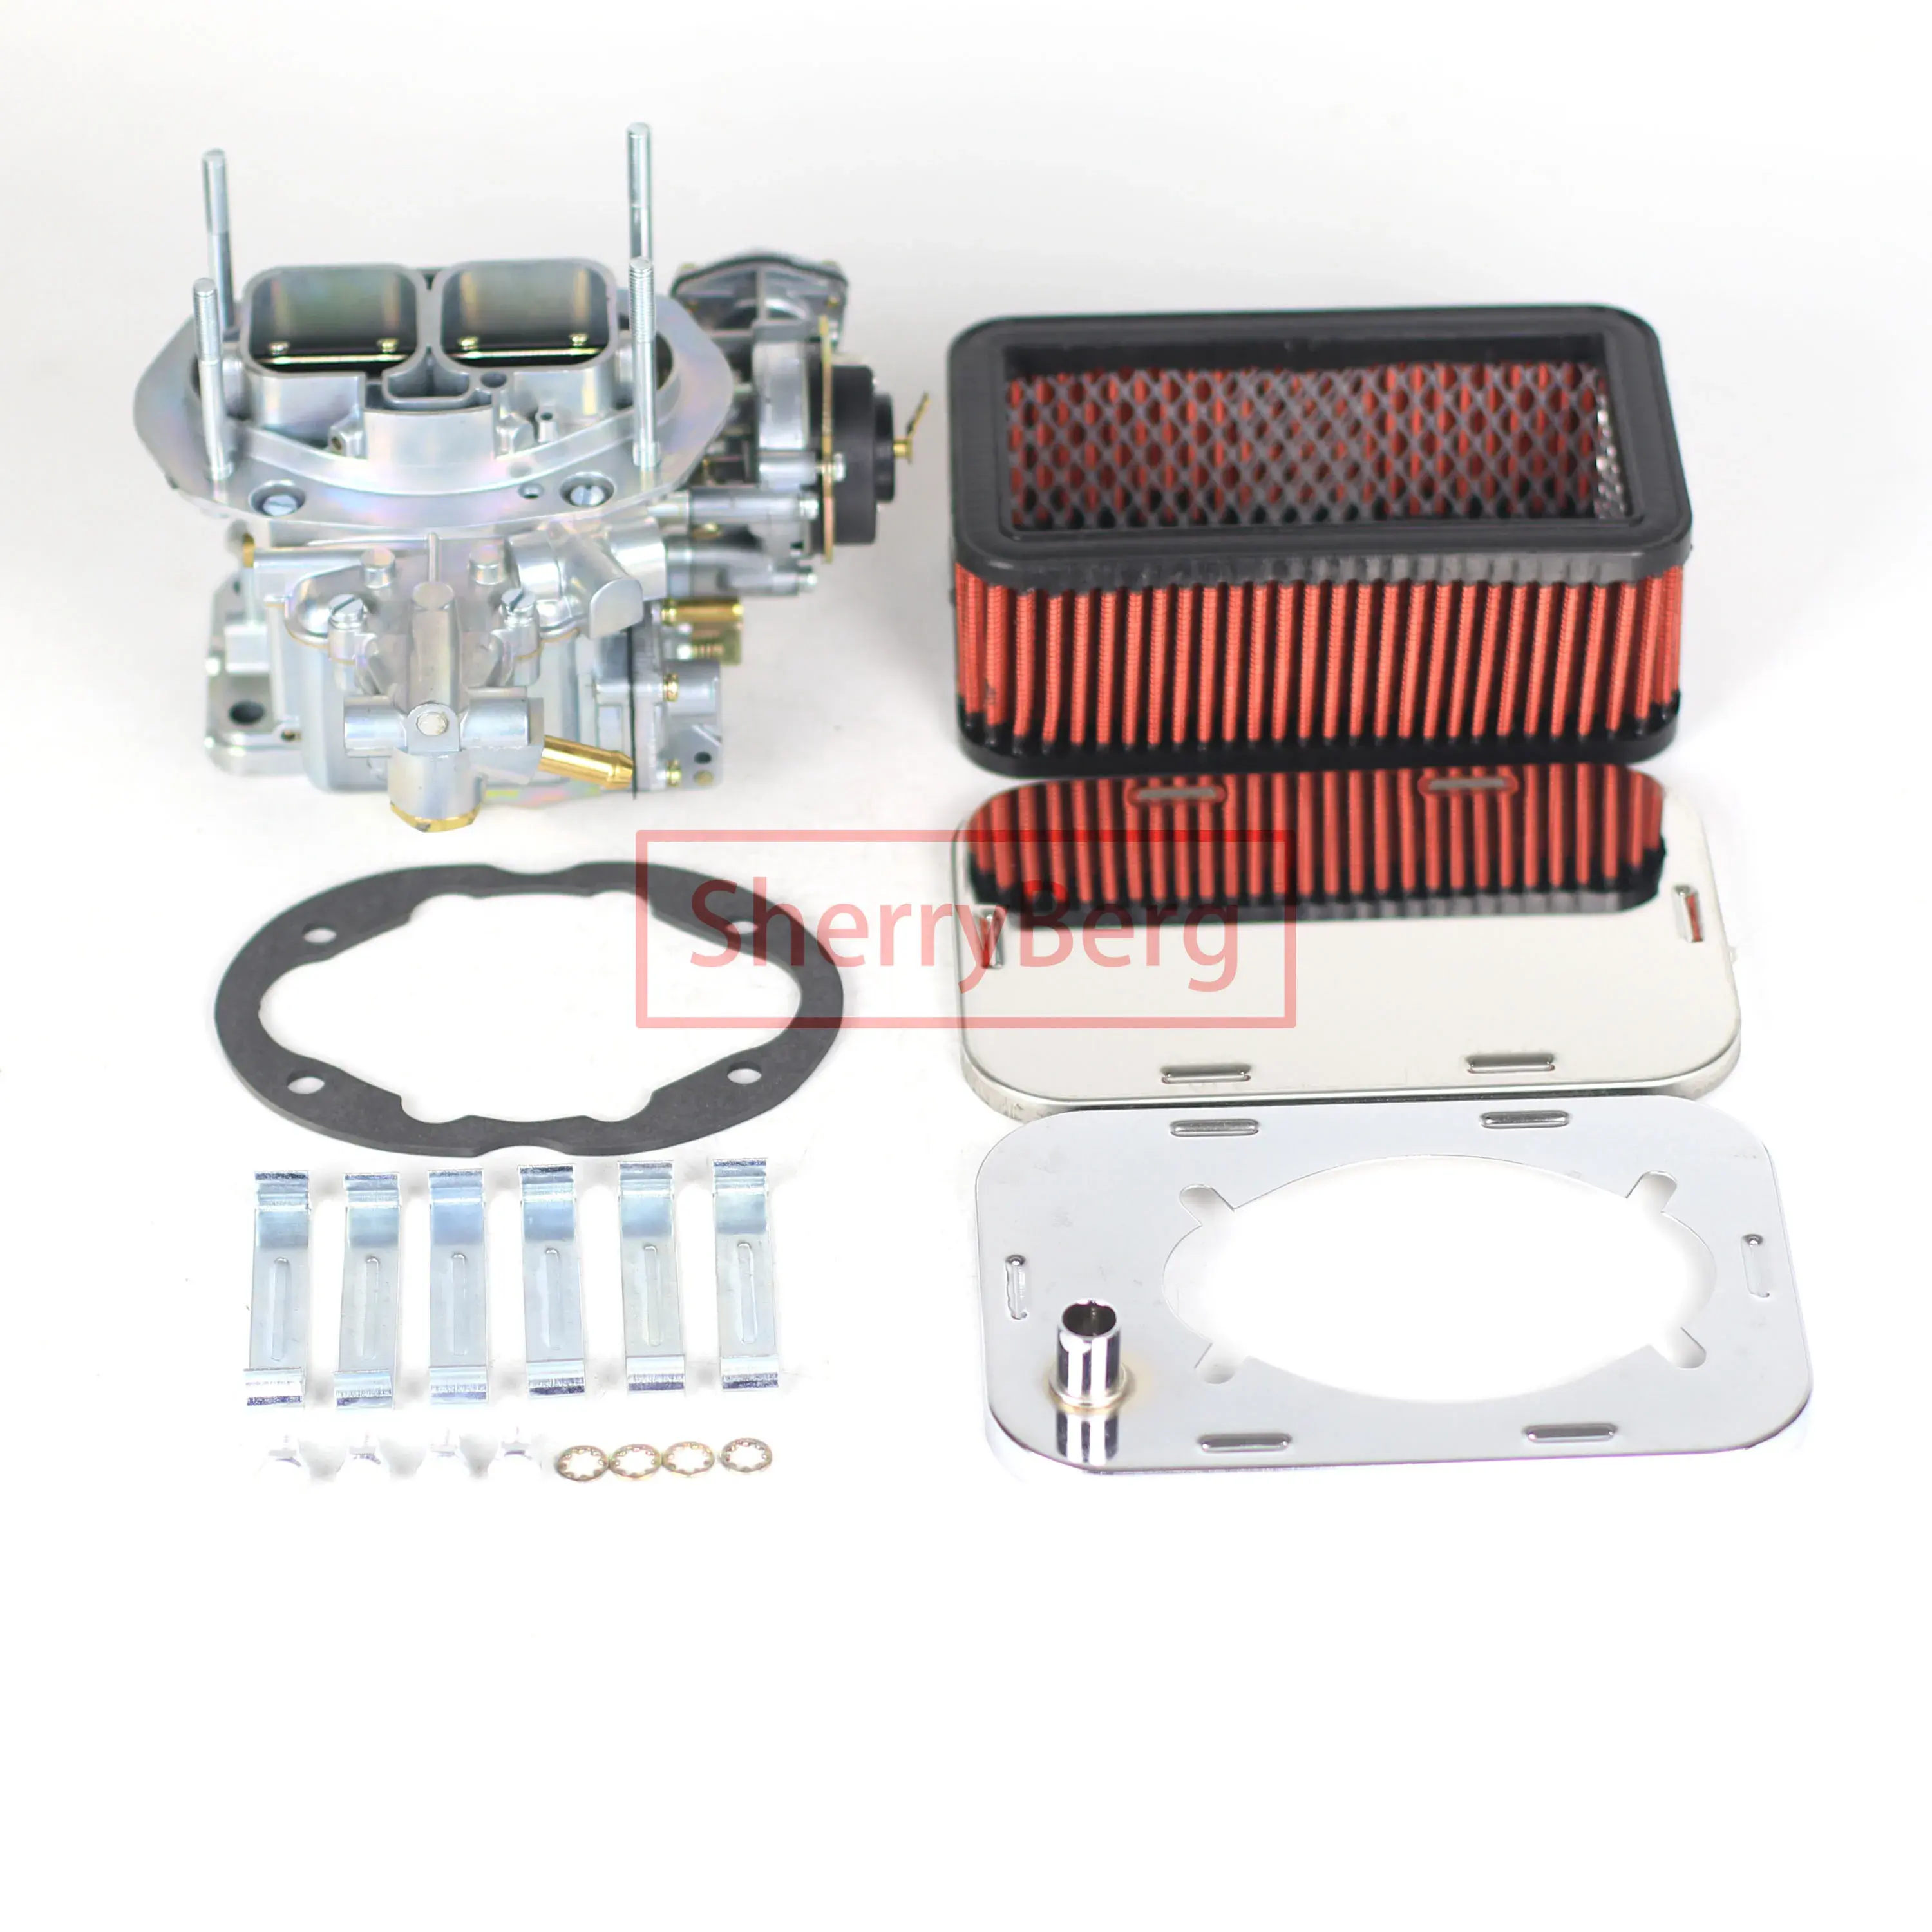 SherryBerg EMPI Weber Carburador carb 32/36 dfev carburador carb + filtro de ar (65mm de altura) kit para fiat VW ford skoda